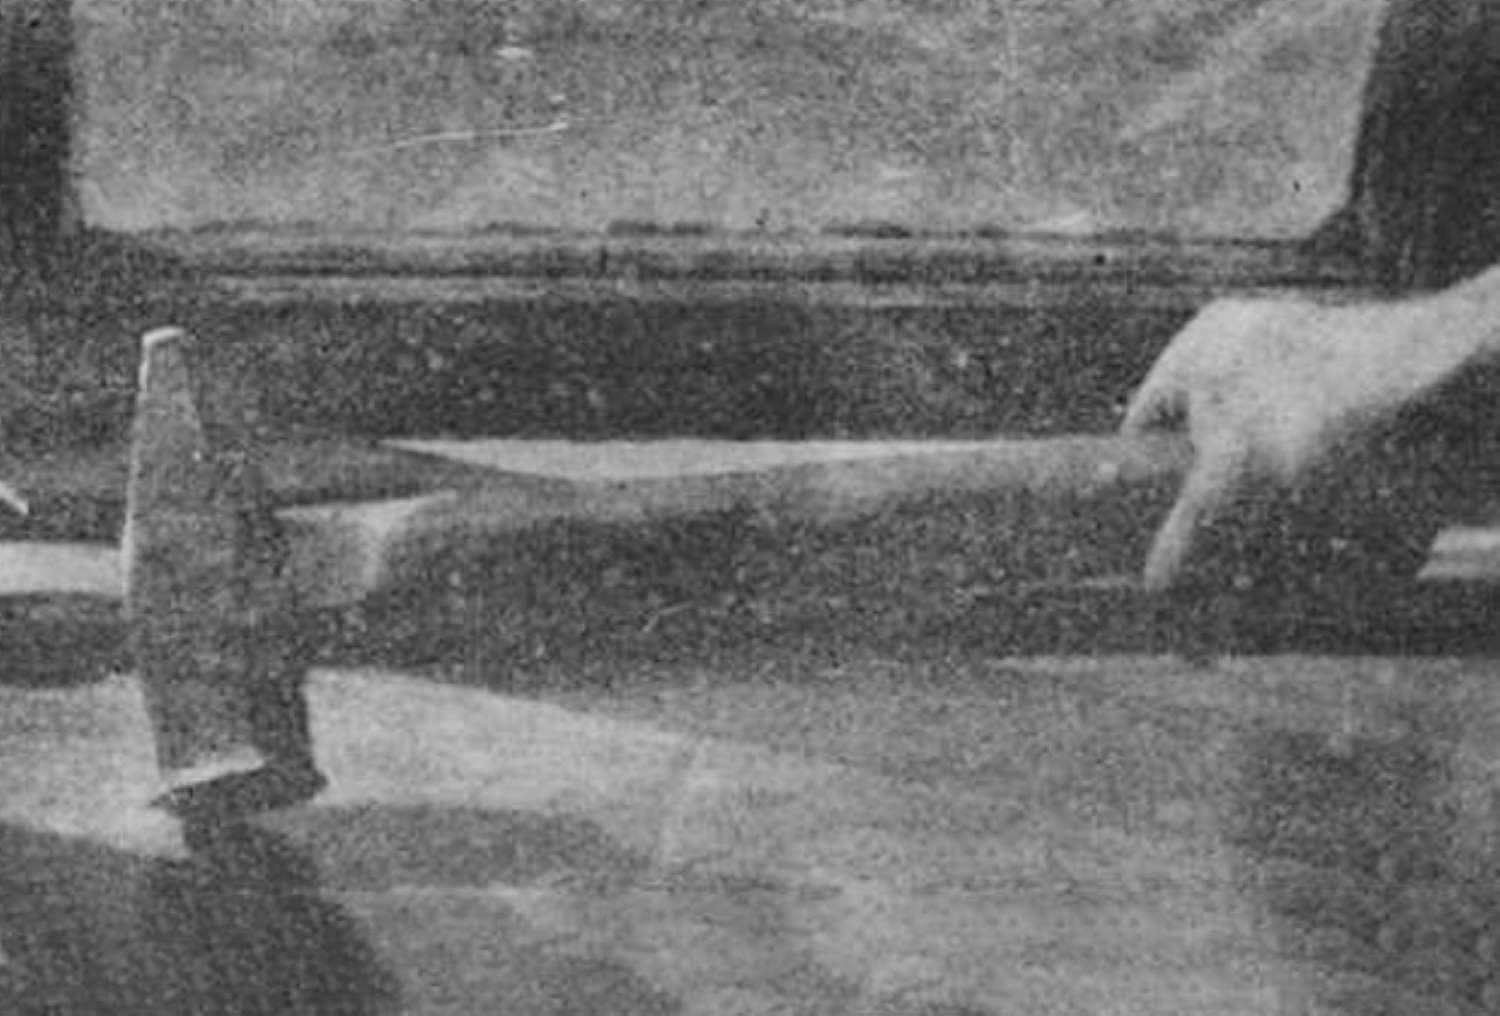 Молот, которым Василий Комаров расправлялся с жертвами. Фото из журнала «Огонек», №11, 1923 год